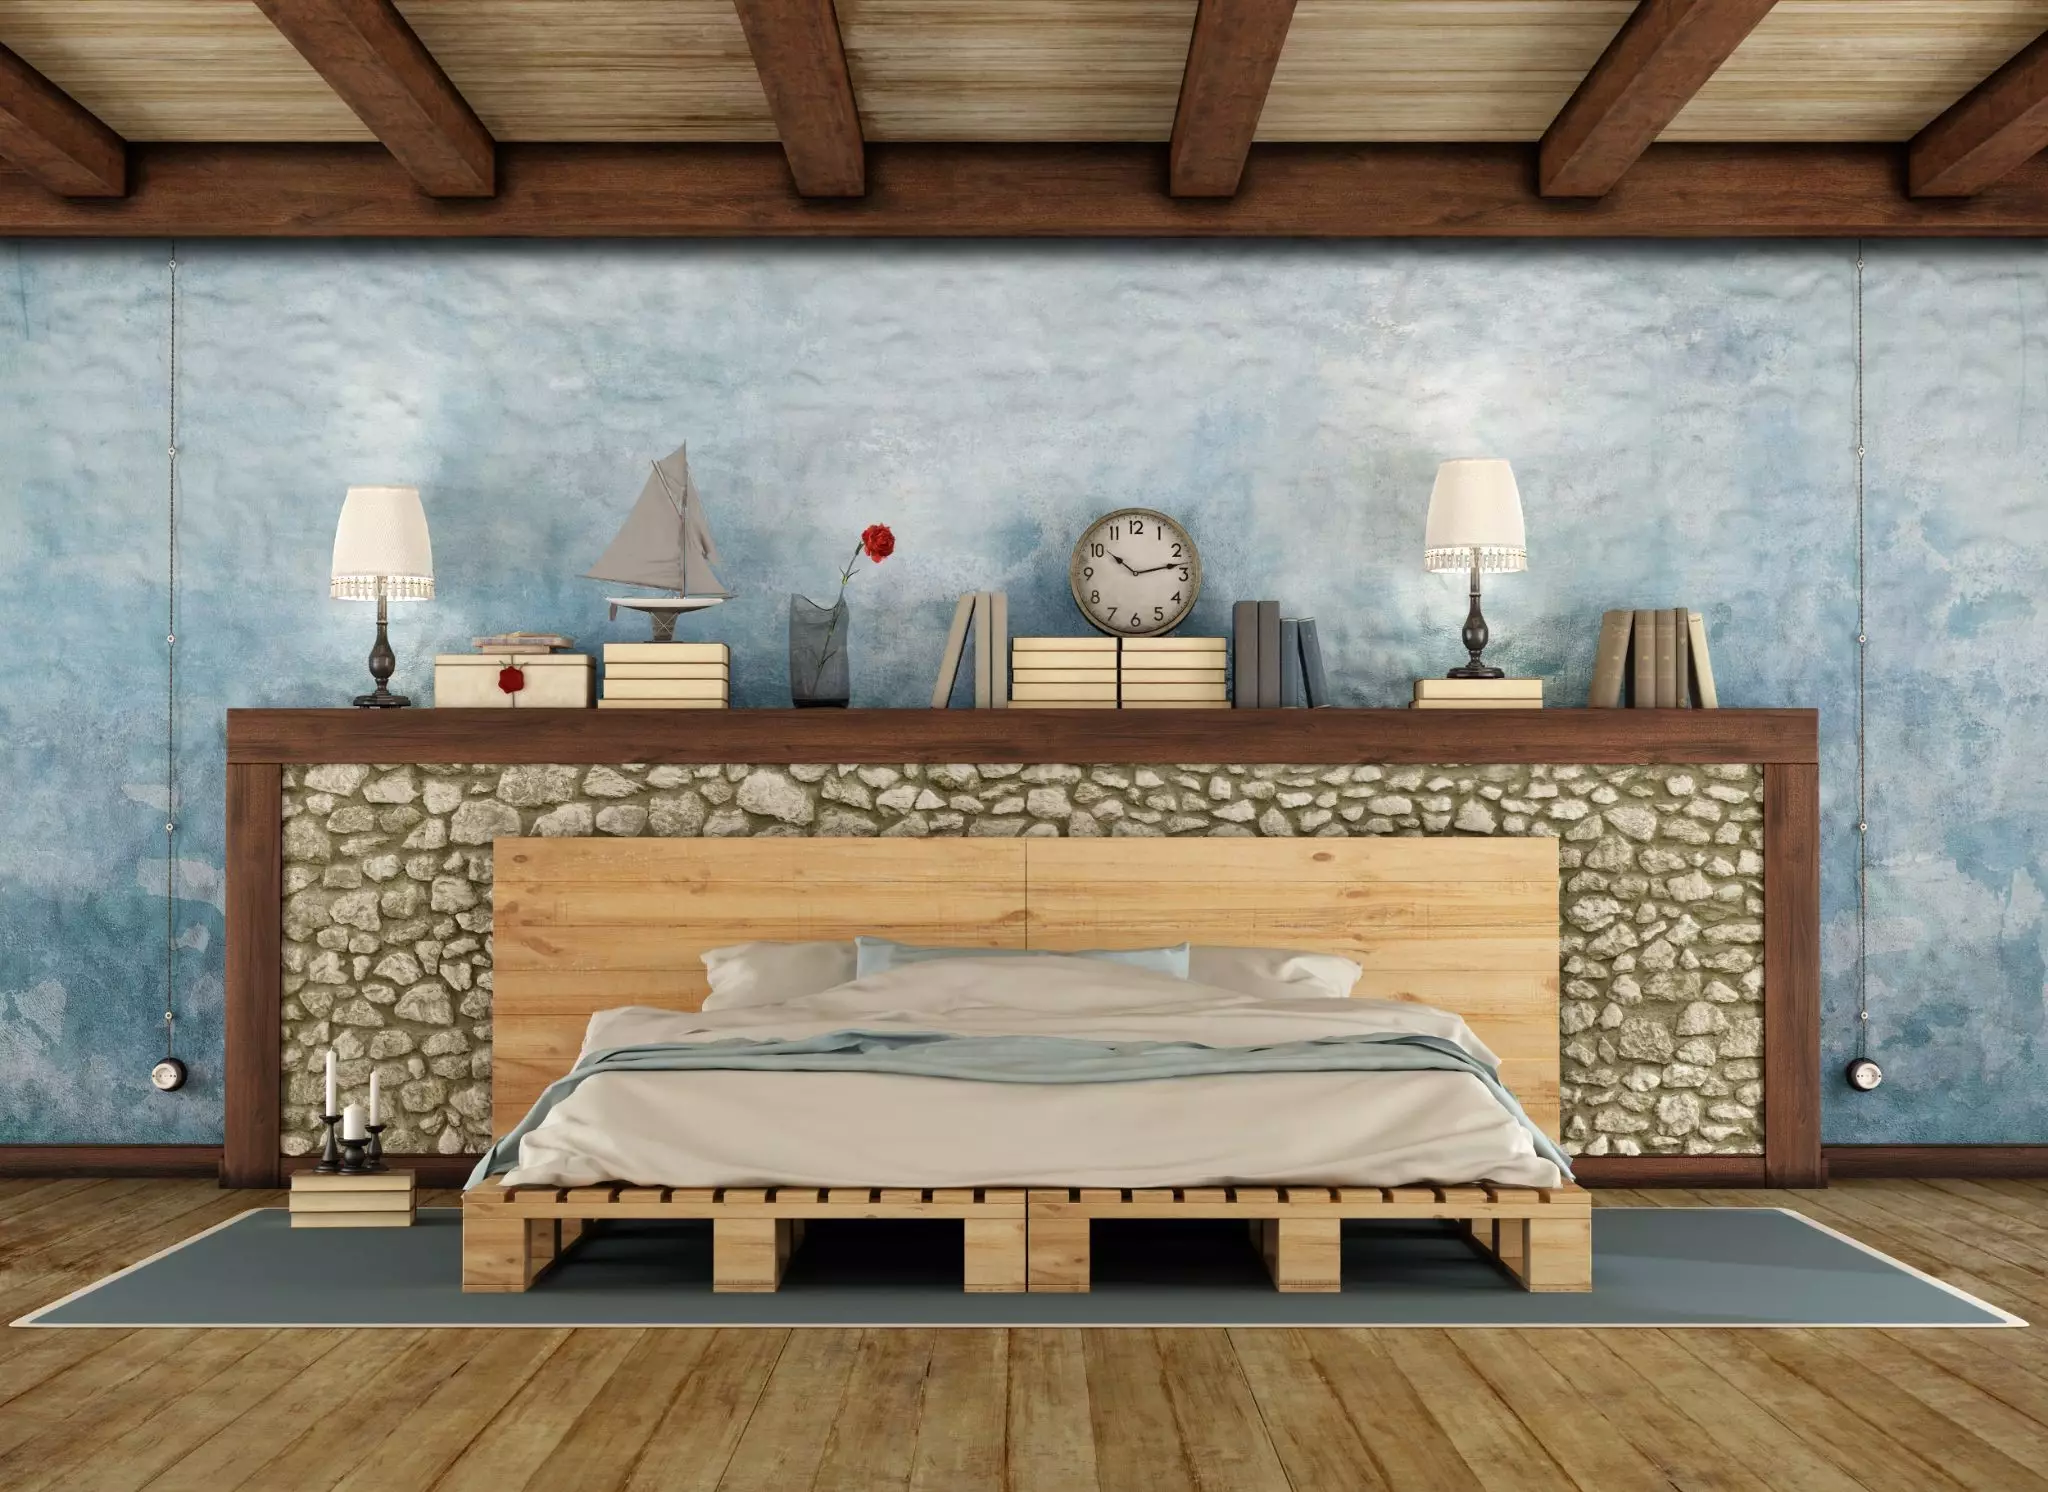 Bảng màu cho ý tưởng phòng ngủ Rustic hiện đại thường là bảng màu trung tính